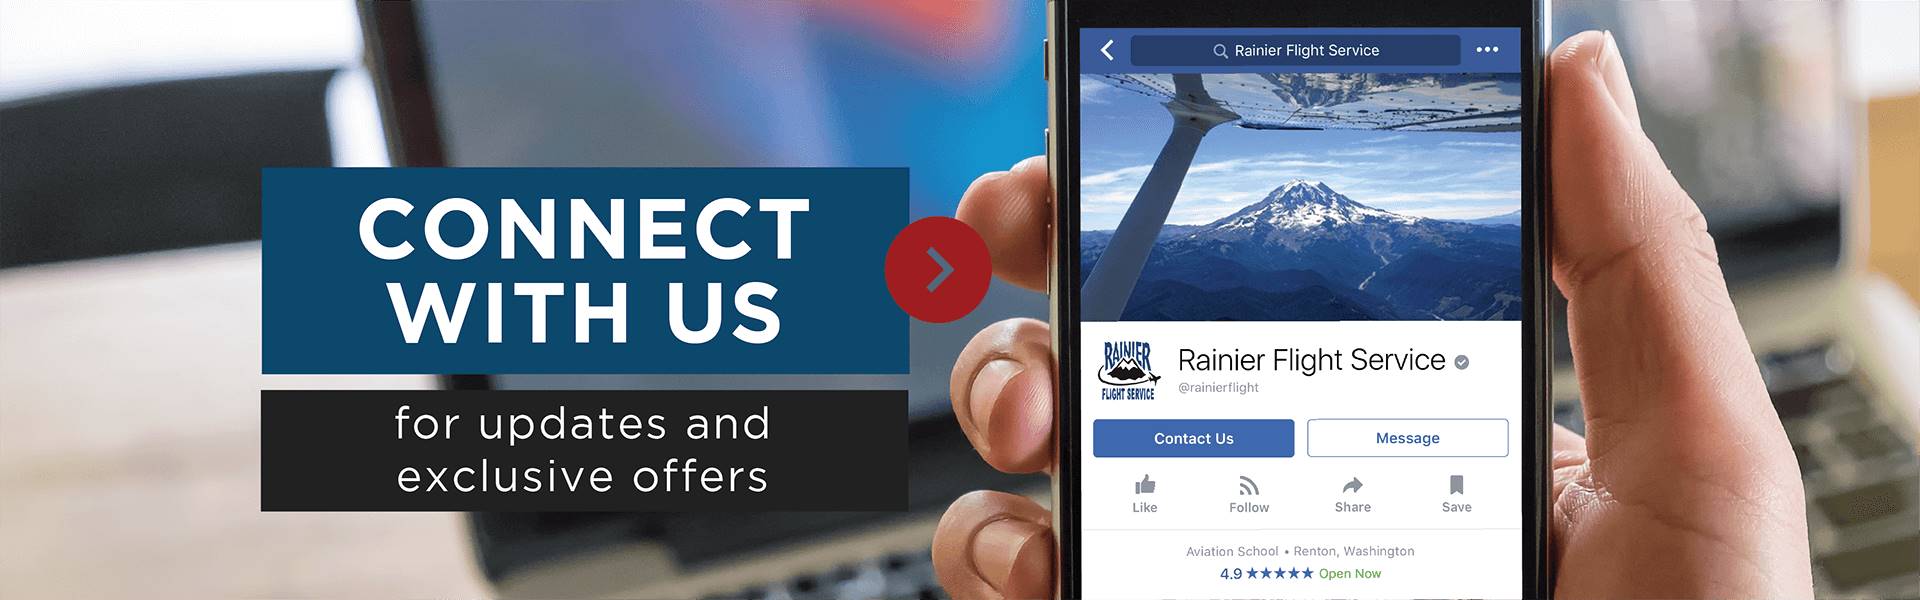 Rainier Flight Service Social Media